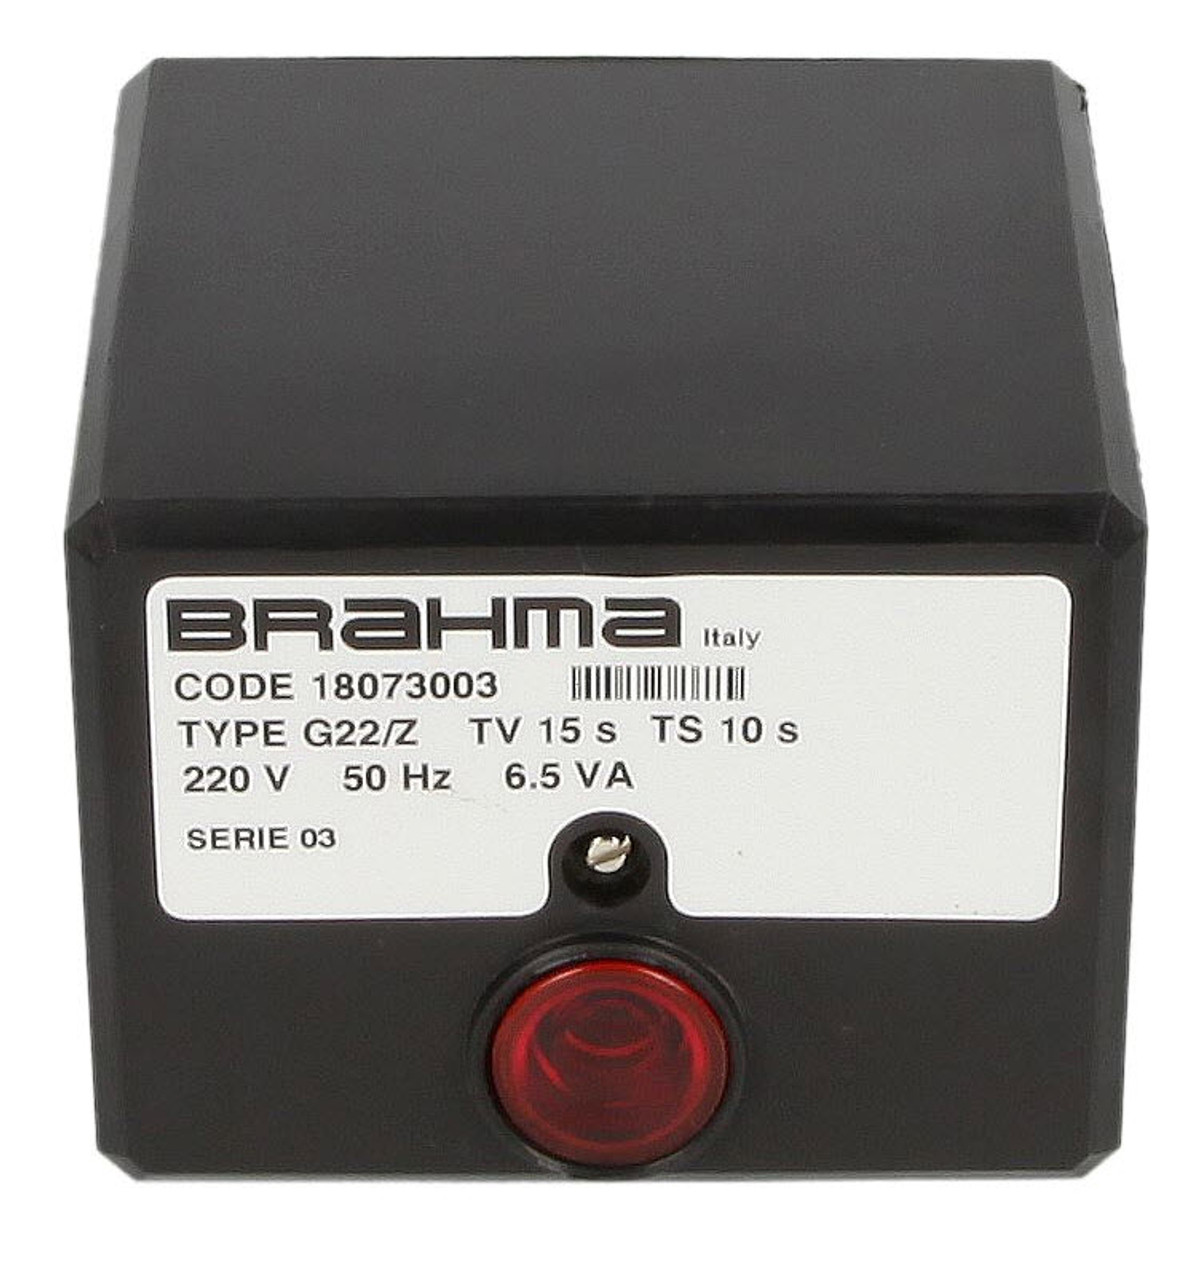 Control unit Brahma G22/7, 18073003